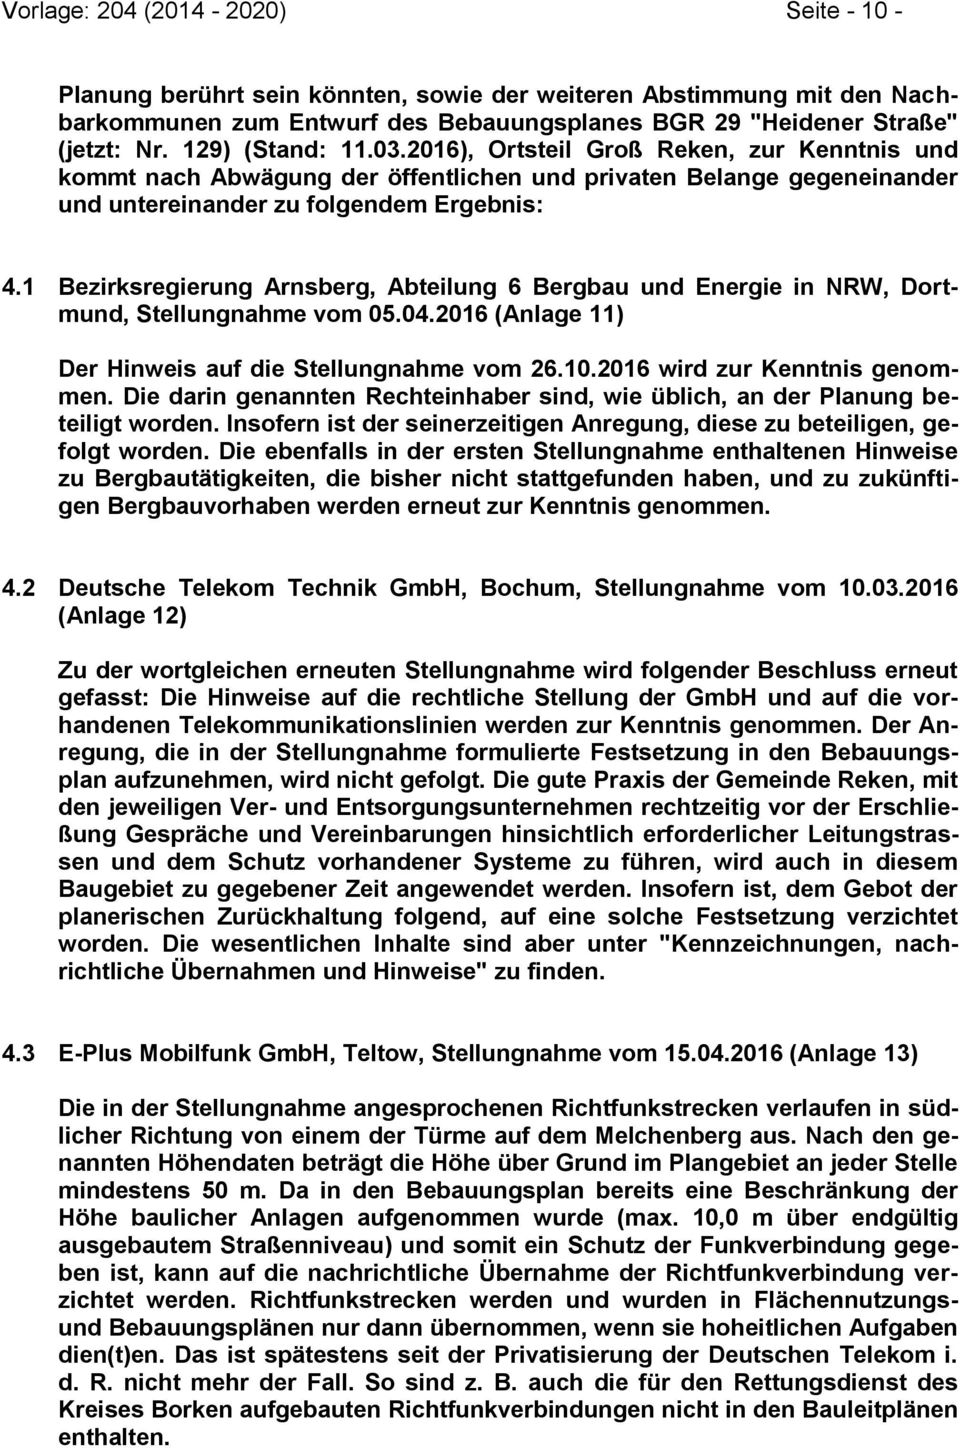 1 Bezirksregierung Arnsberg, Abteilung 6 Bergbau und Energie in NRW, Dortmund, Stellungnahme vom 05.04.2016 (Anlage 11) Der Hinweis auf die Stellungnahme vom 26.10.2016 wird zur Kenntnis genommen.